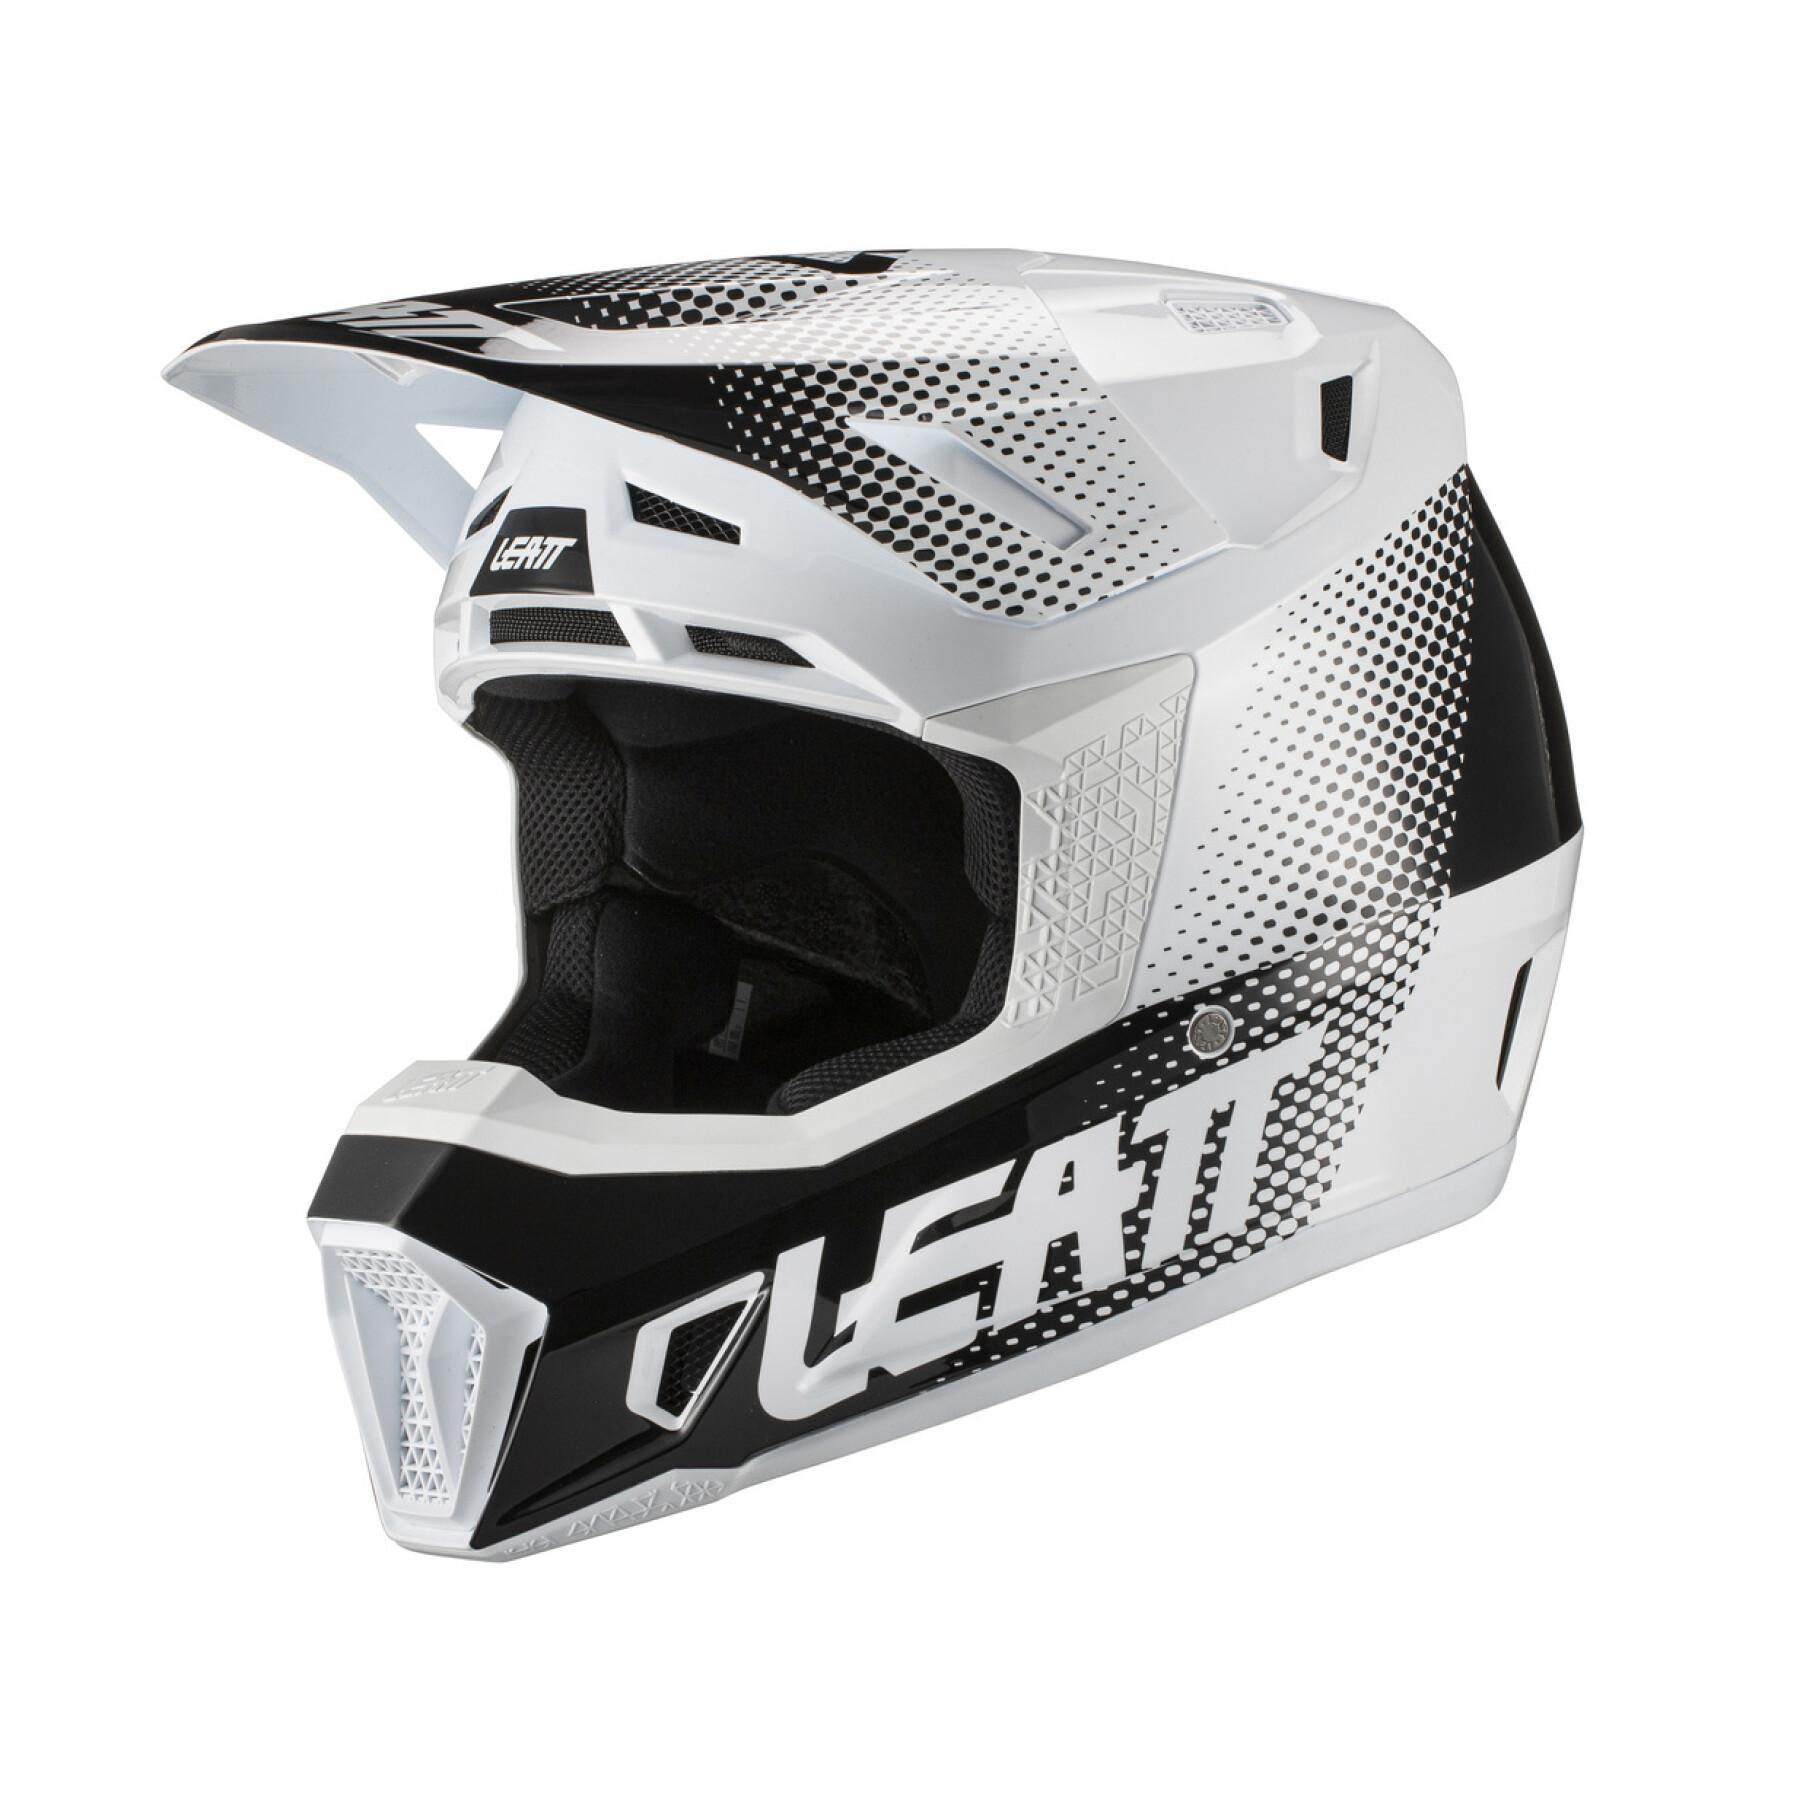 Helm Motocross inkl. Brille Leatt 7.5 V21.1